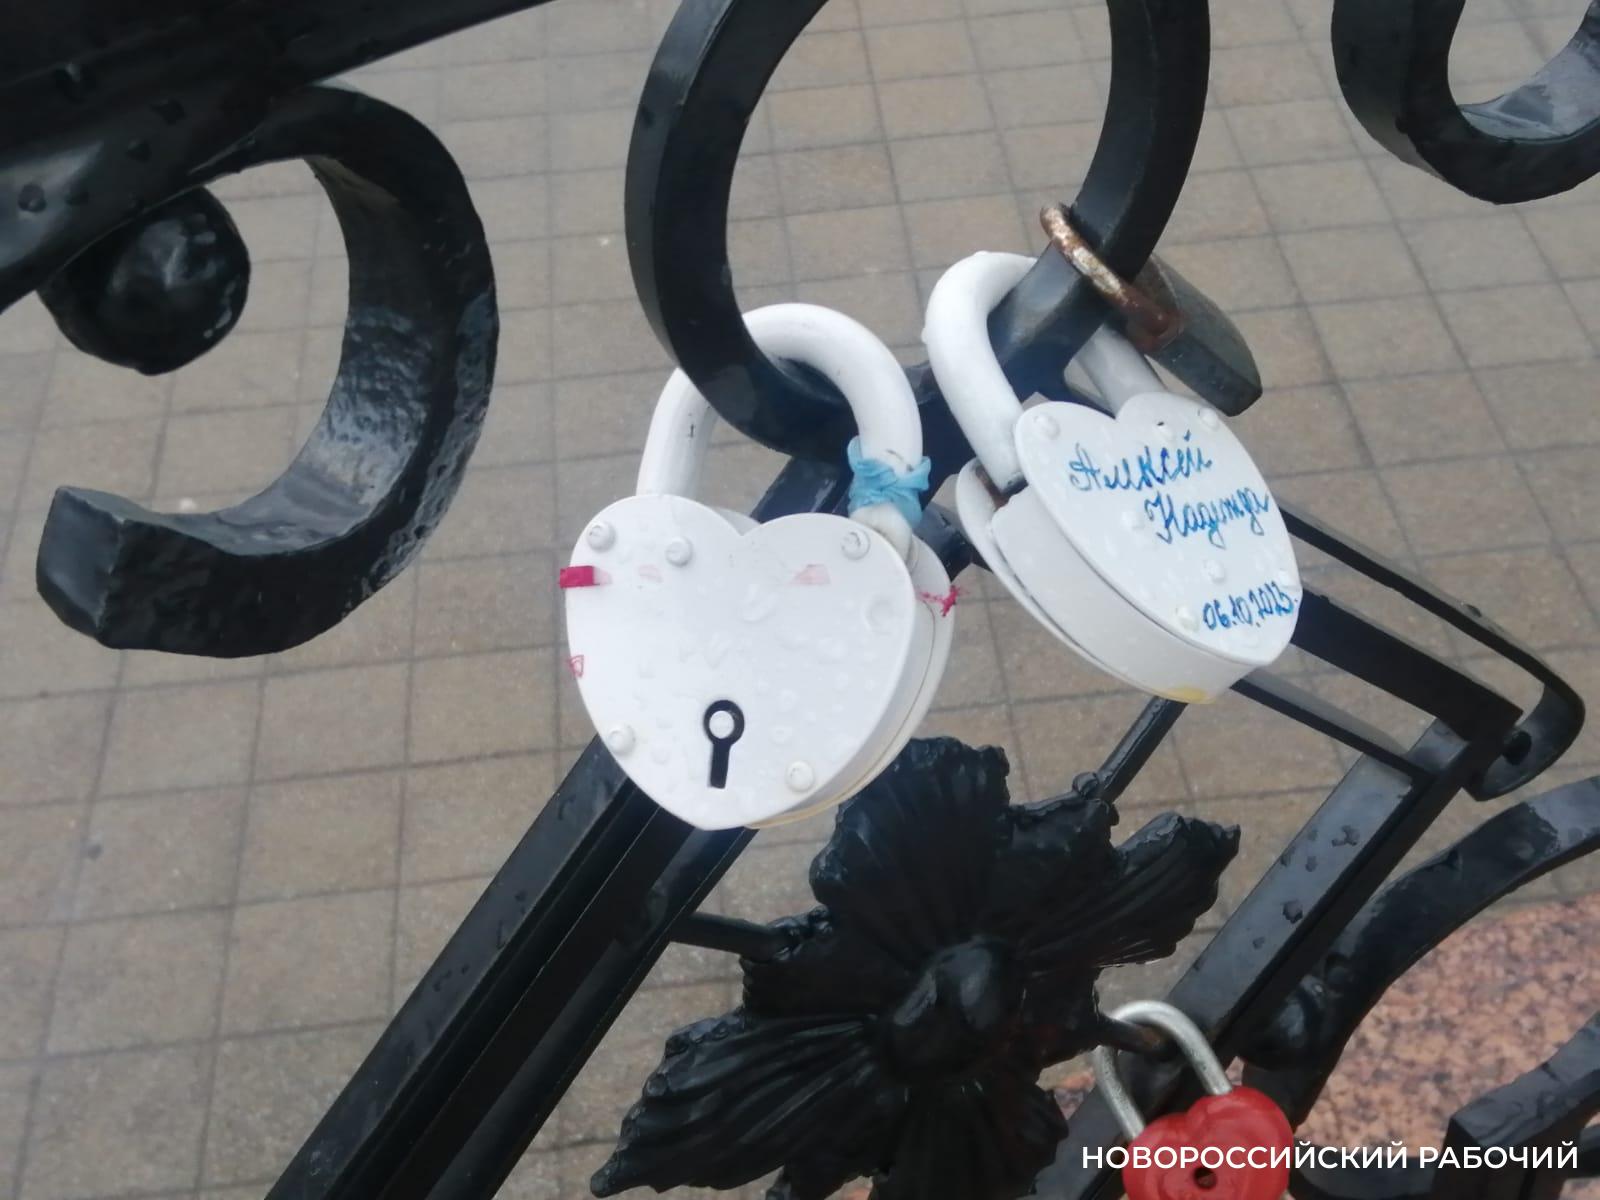 Новороссийцам не нравятся ржавые замки, которые влюбленные вешают на решетки в центре города